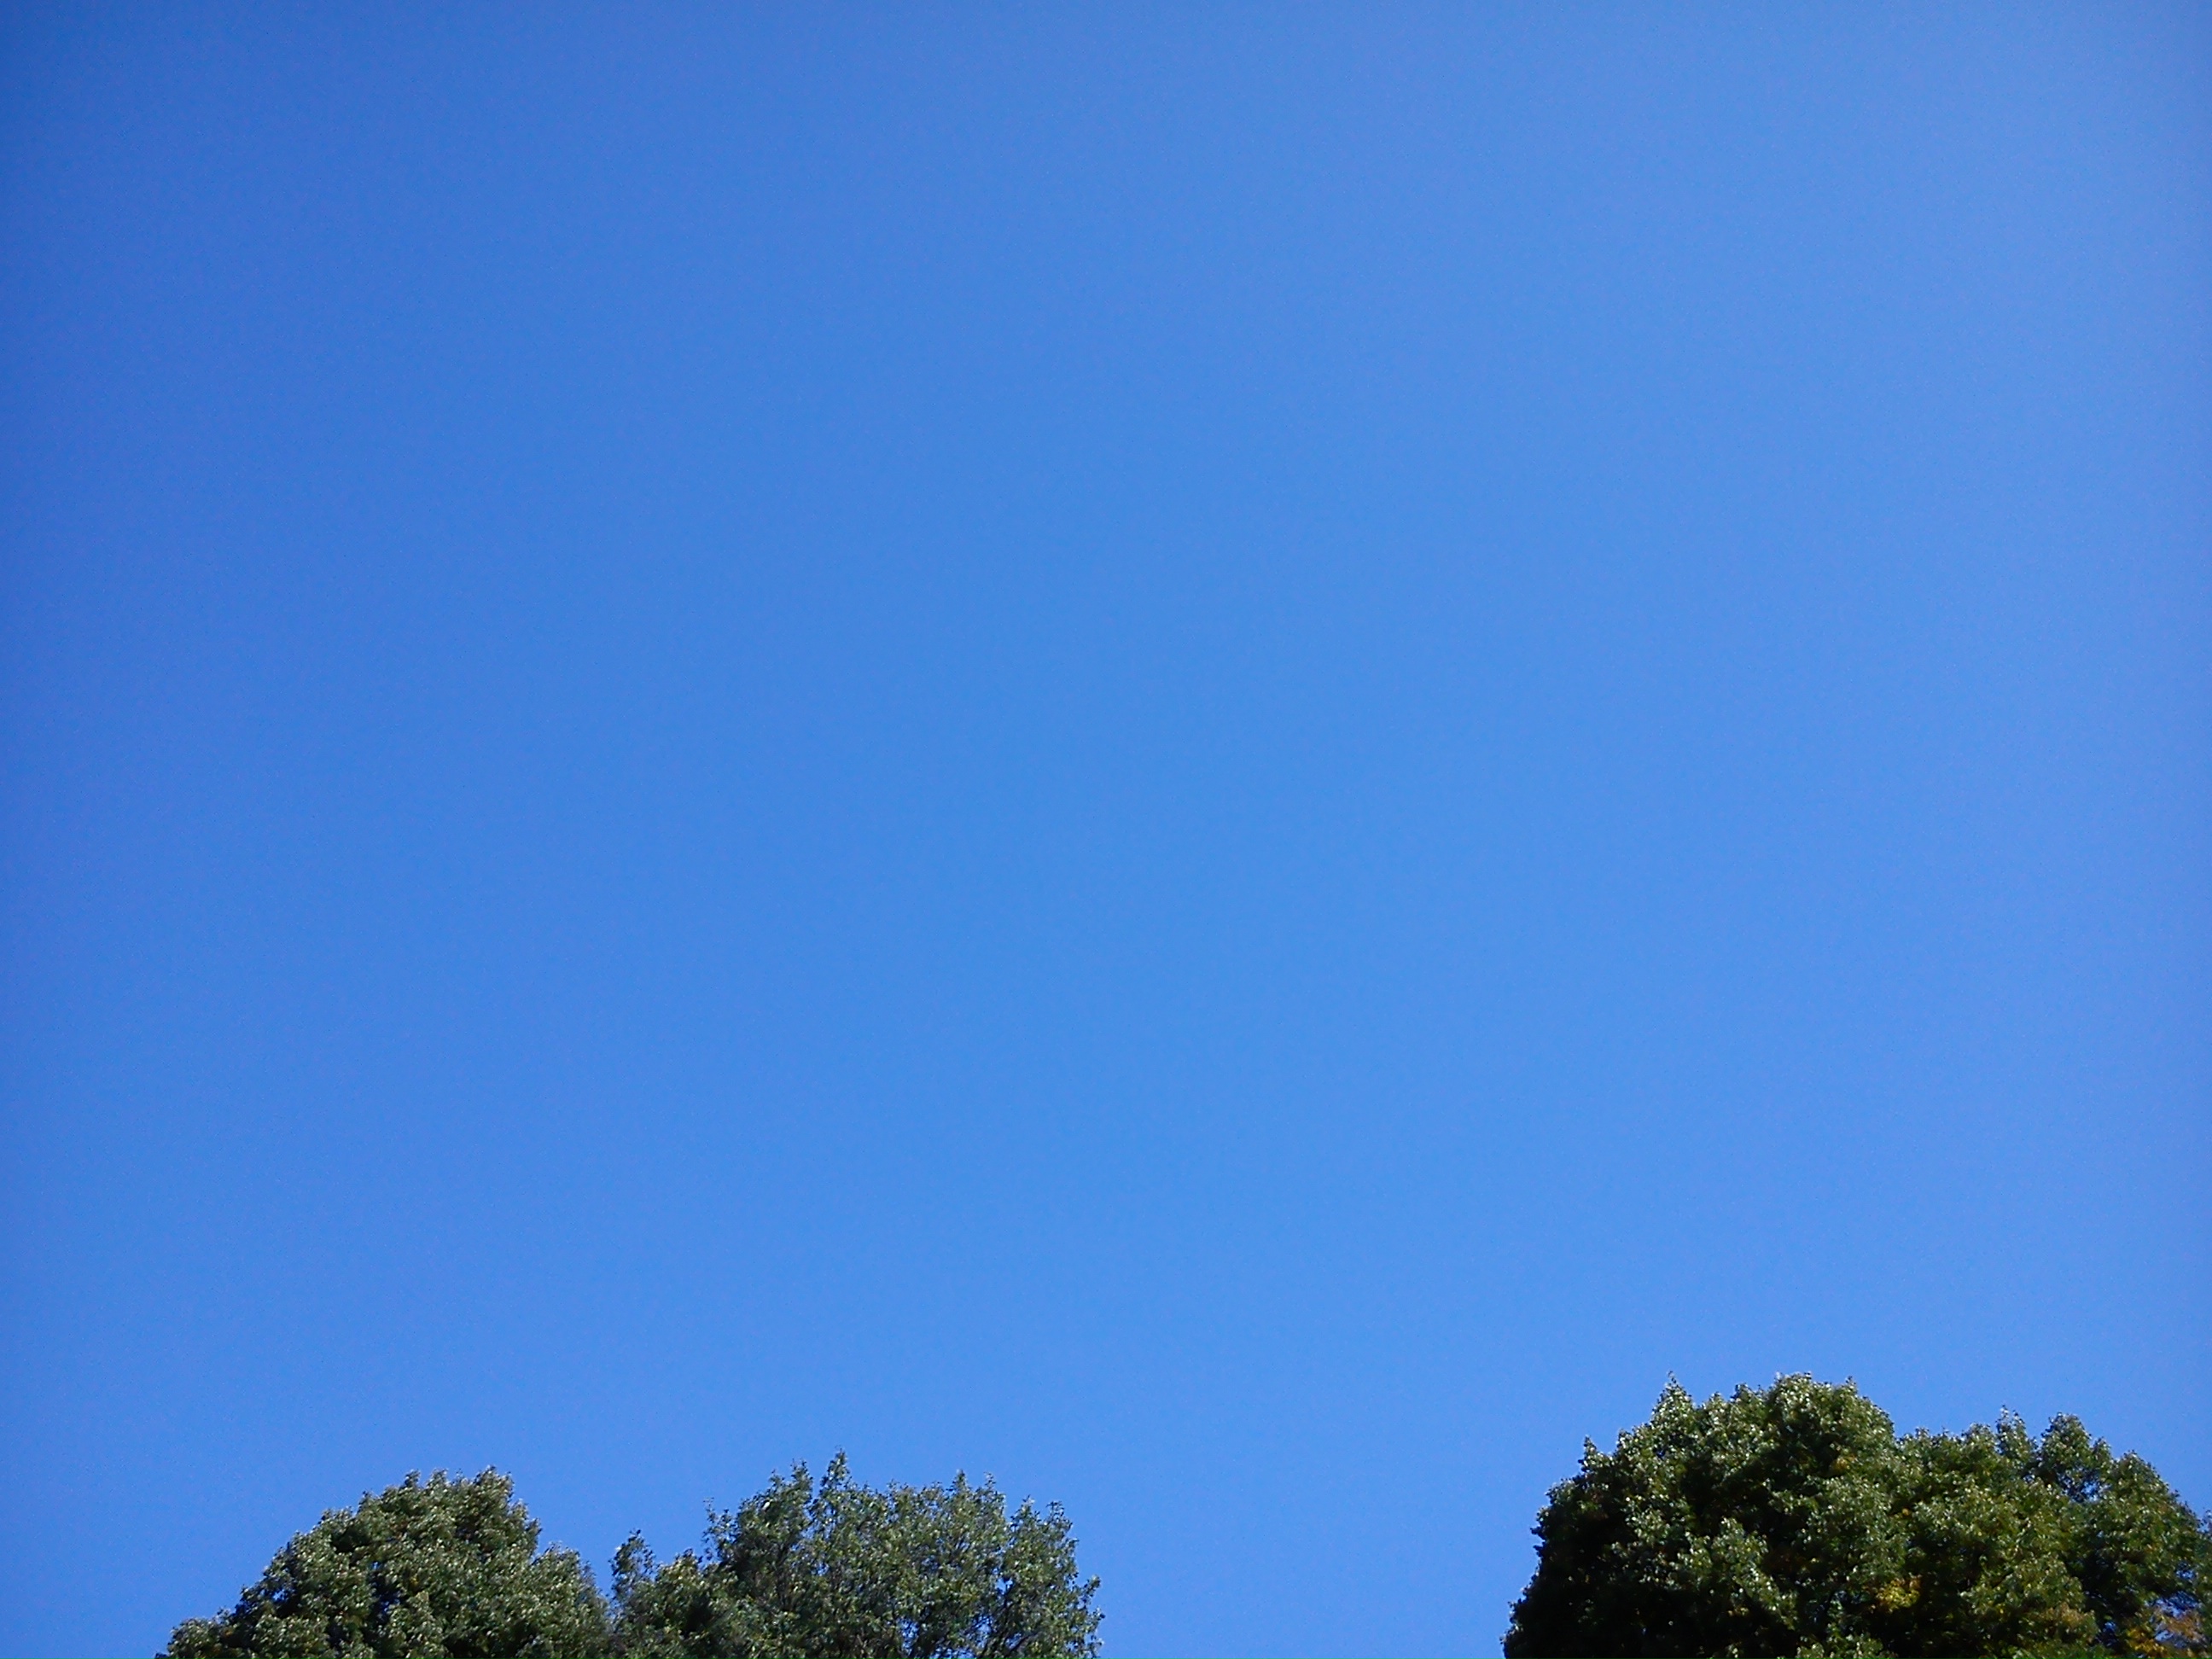 По бирюзовому небосклону бесконечно высокому. Чистое голубое небо. Ясное небо. Голубое безоблачное небо.